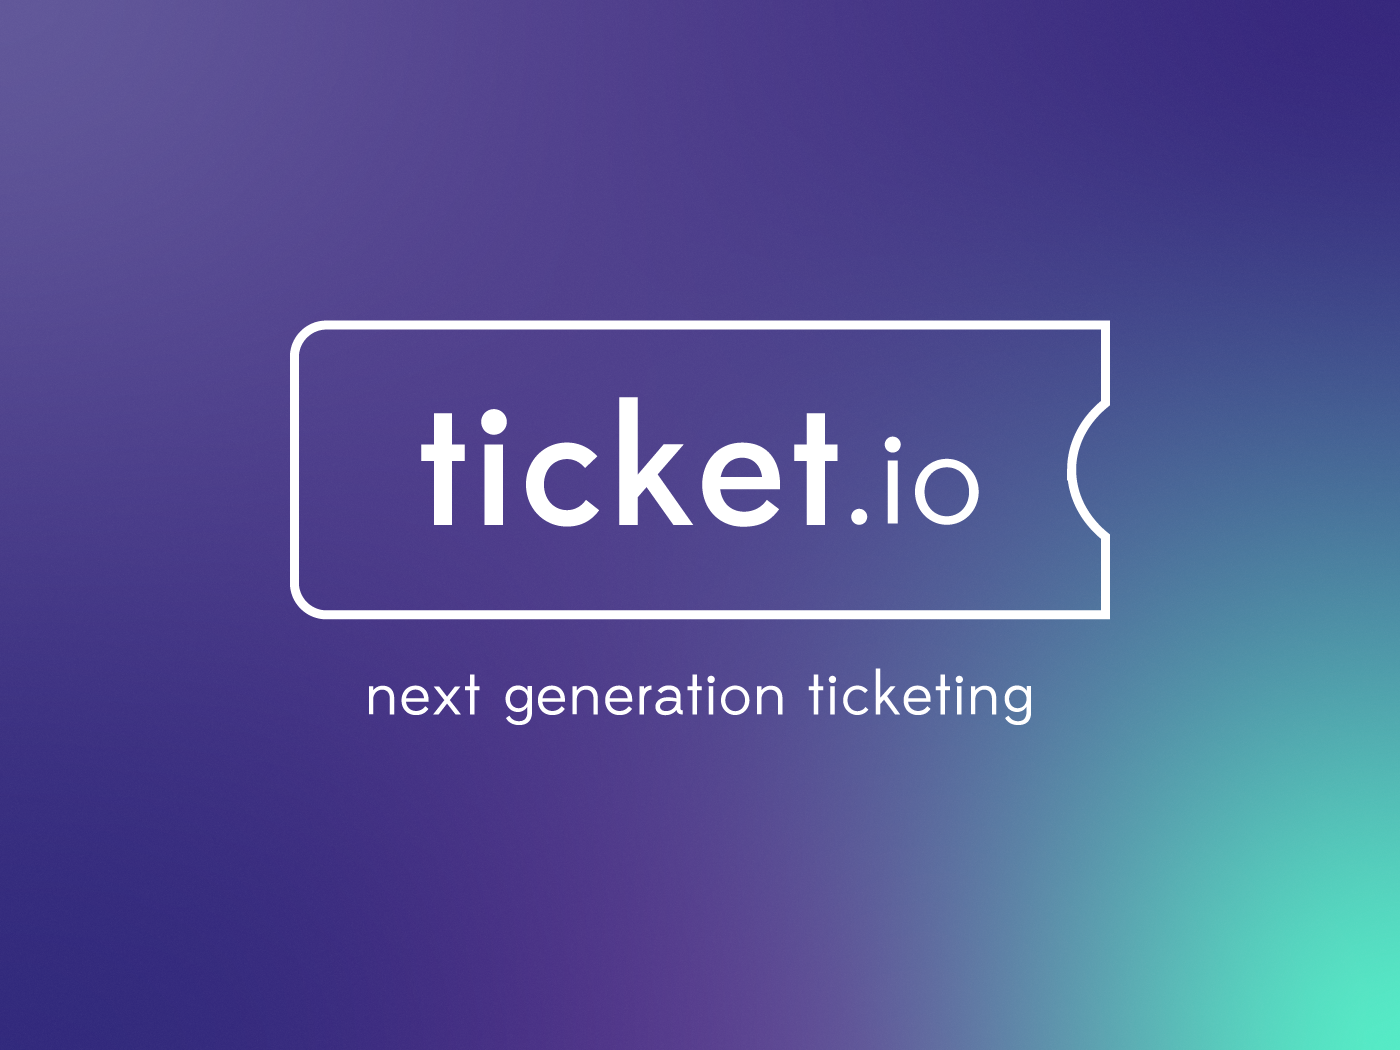 Das Logo der ticket.io next generation ticketing.